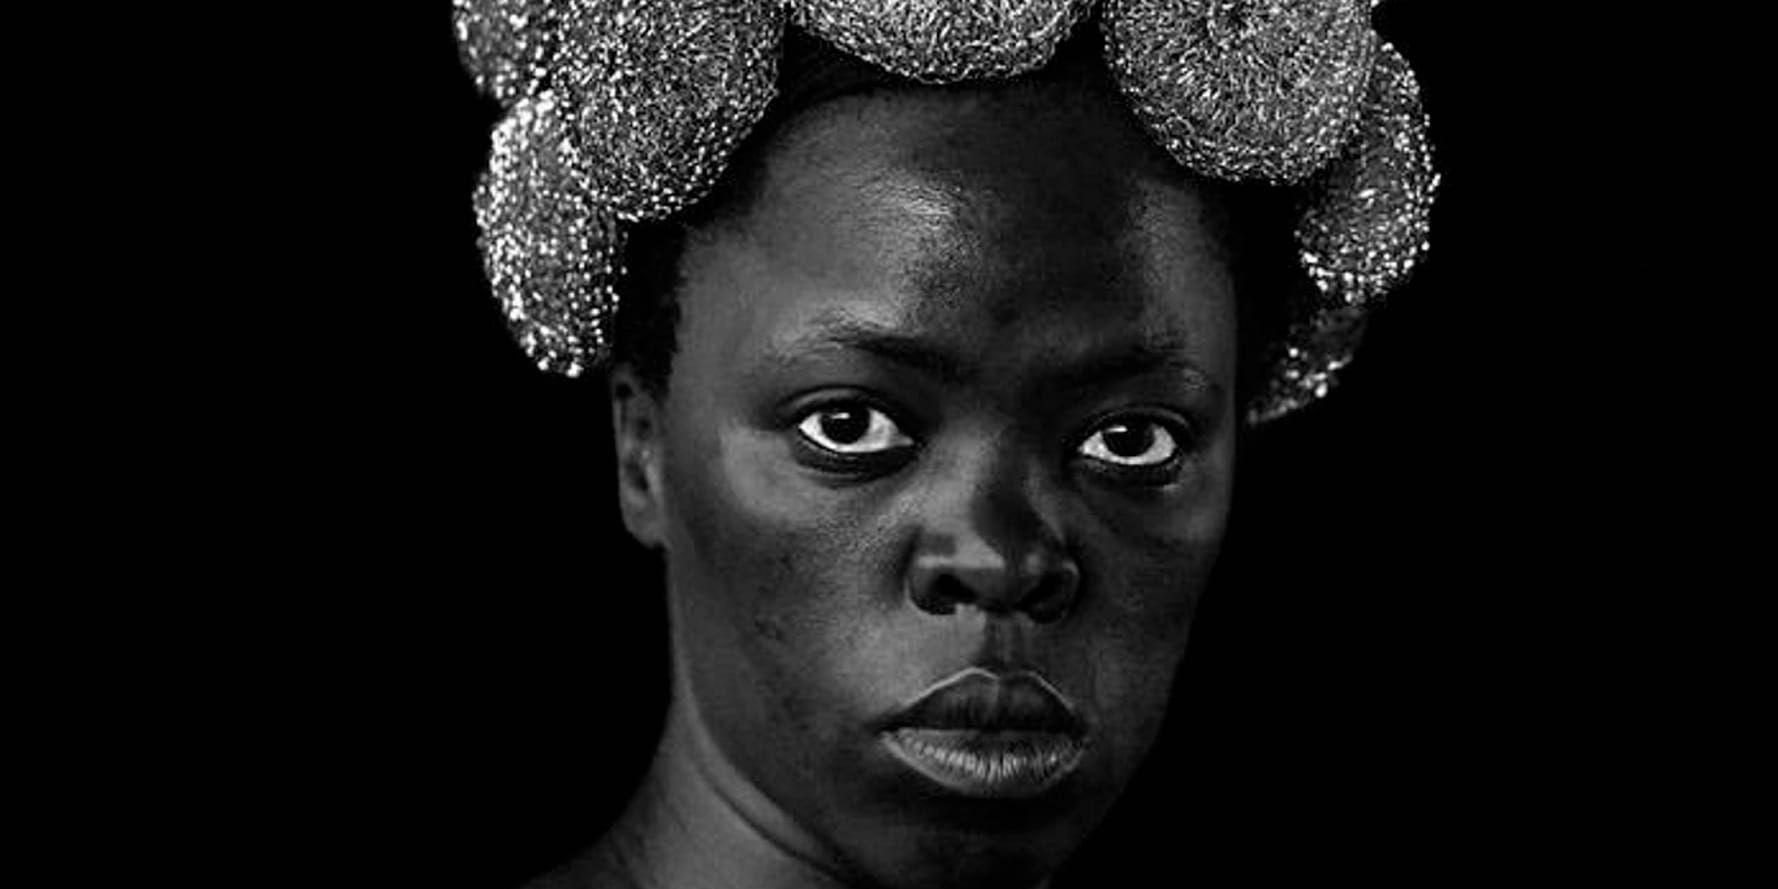 Amsterdam. Självporträtt av den sydafrikanska fotografen och aktivisten Zanele Muholi, som ställs ut i en stor soloutställning på Stedelijk Museum i Amsterdam. Pressbild.